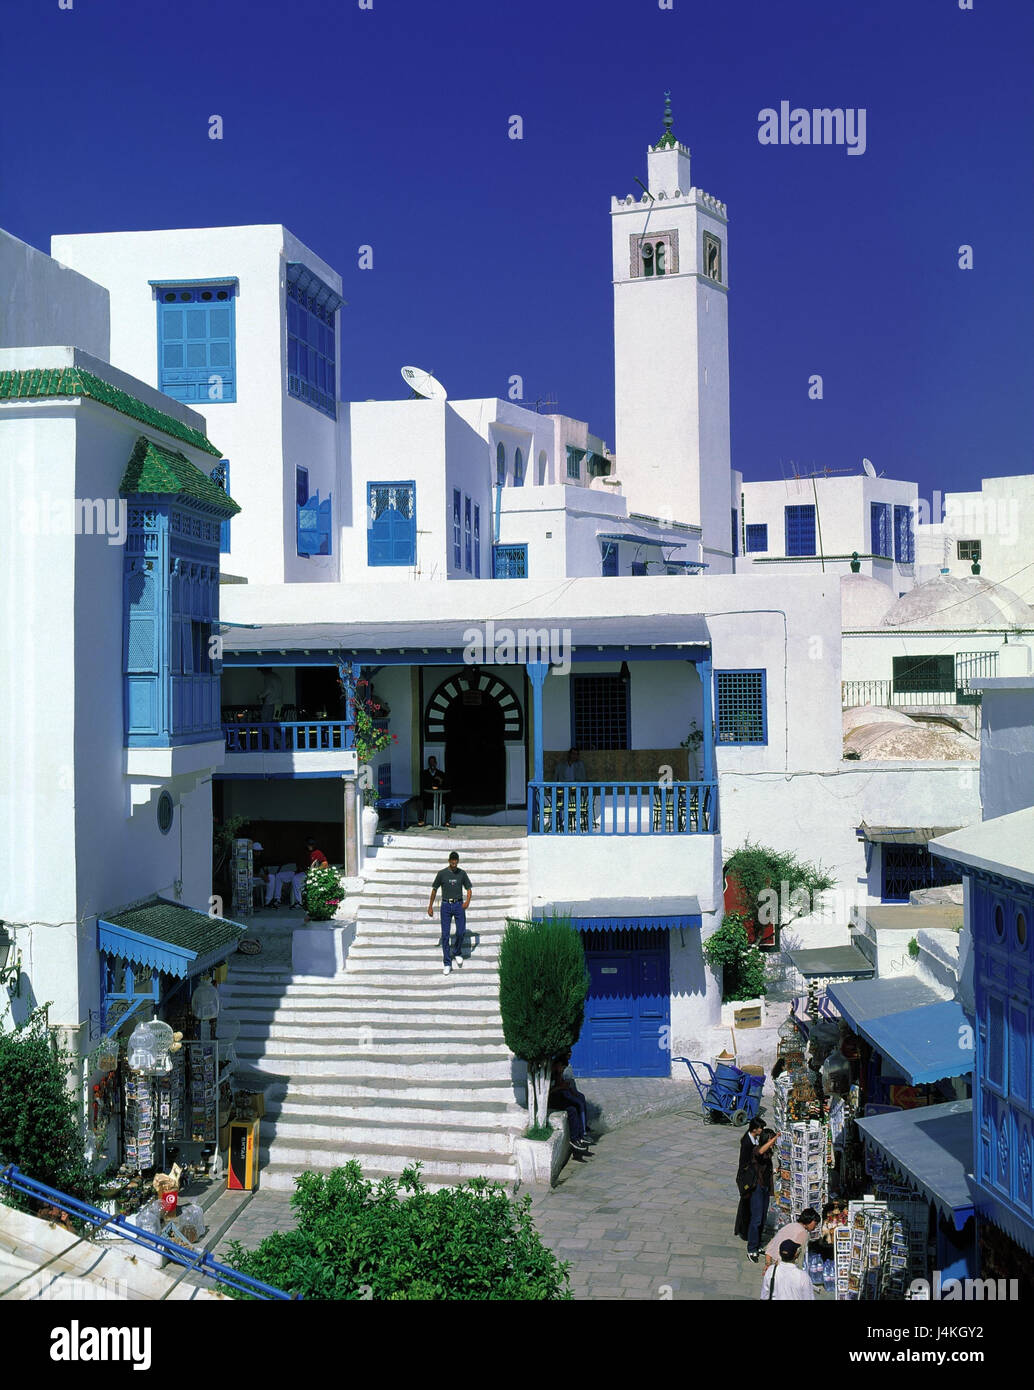 La Tunisie, Sidi Bou Saïd, vue locale, Lane, cafe, escaliers, clocher village Künster, endroit, près de Tunis, l'architecture, de façon andalouse, résidence de vacances, tourisme Banque D'Images